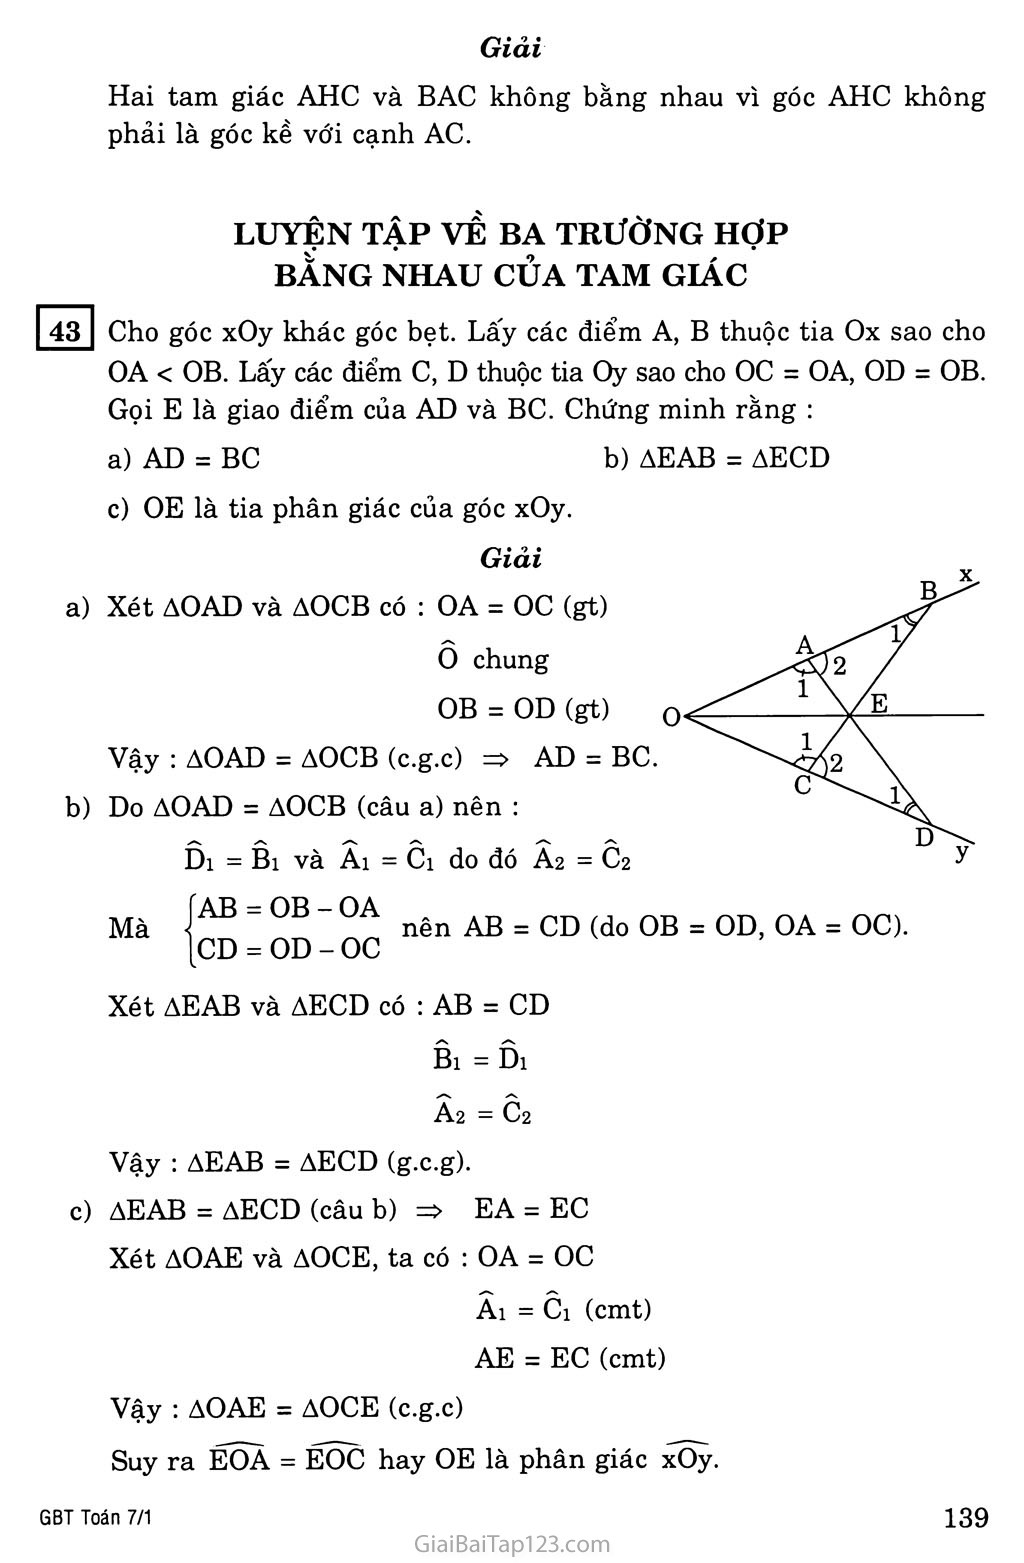 §5. Trường hợp bằng nhau thứ ba của tam giác: góc - cạnh - góc (g.c.g) trang 8